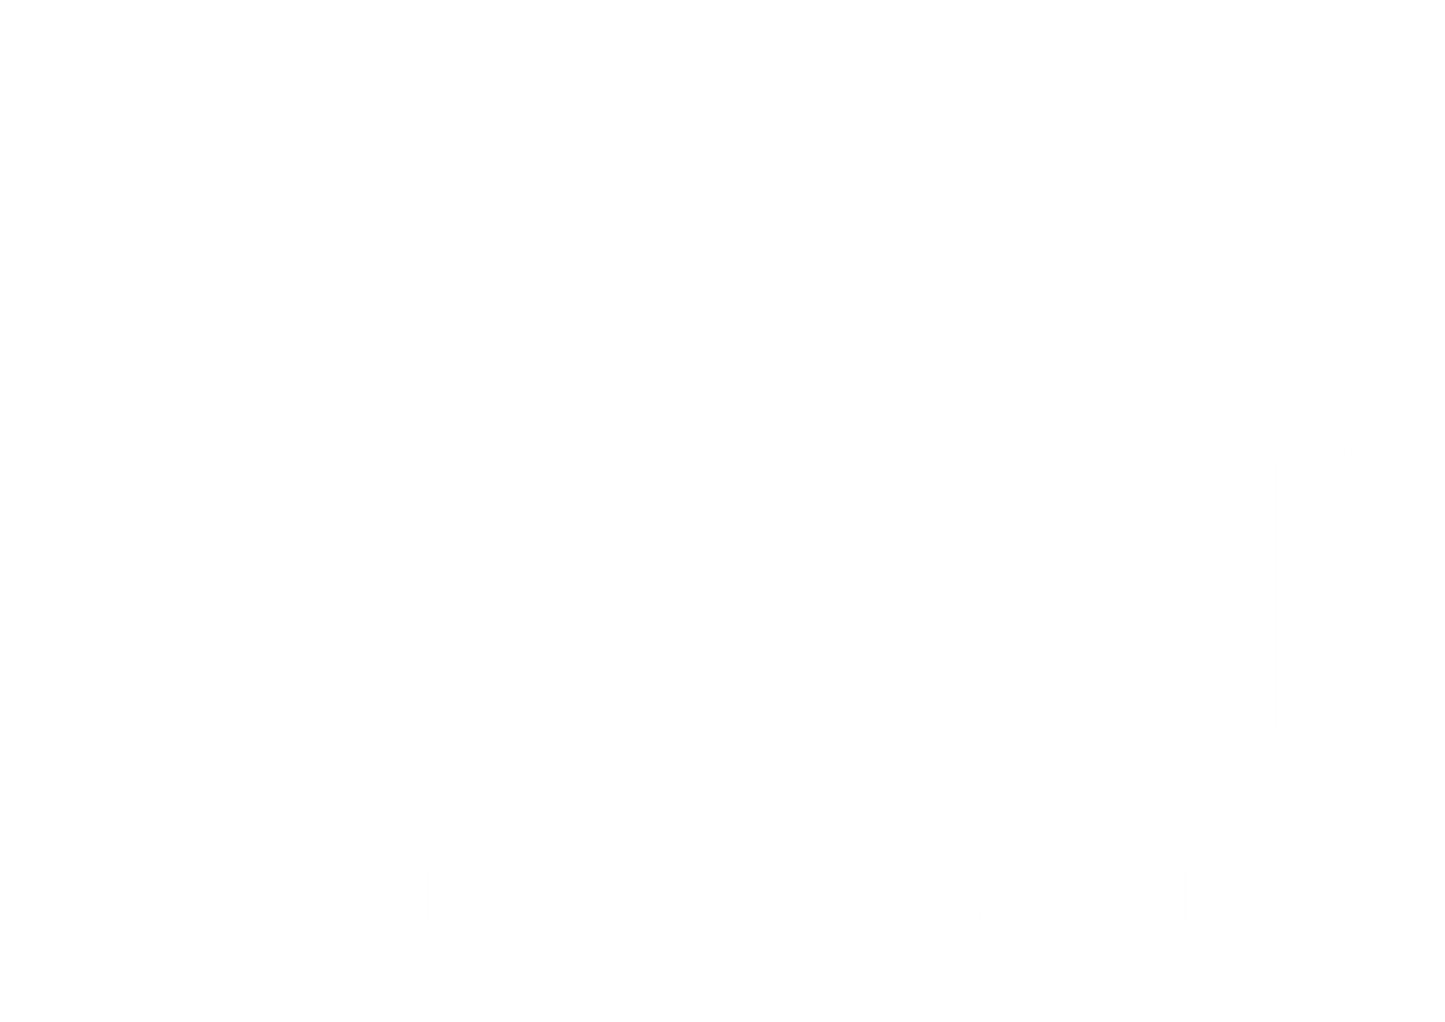 ZiwiPets UK